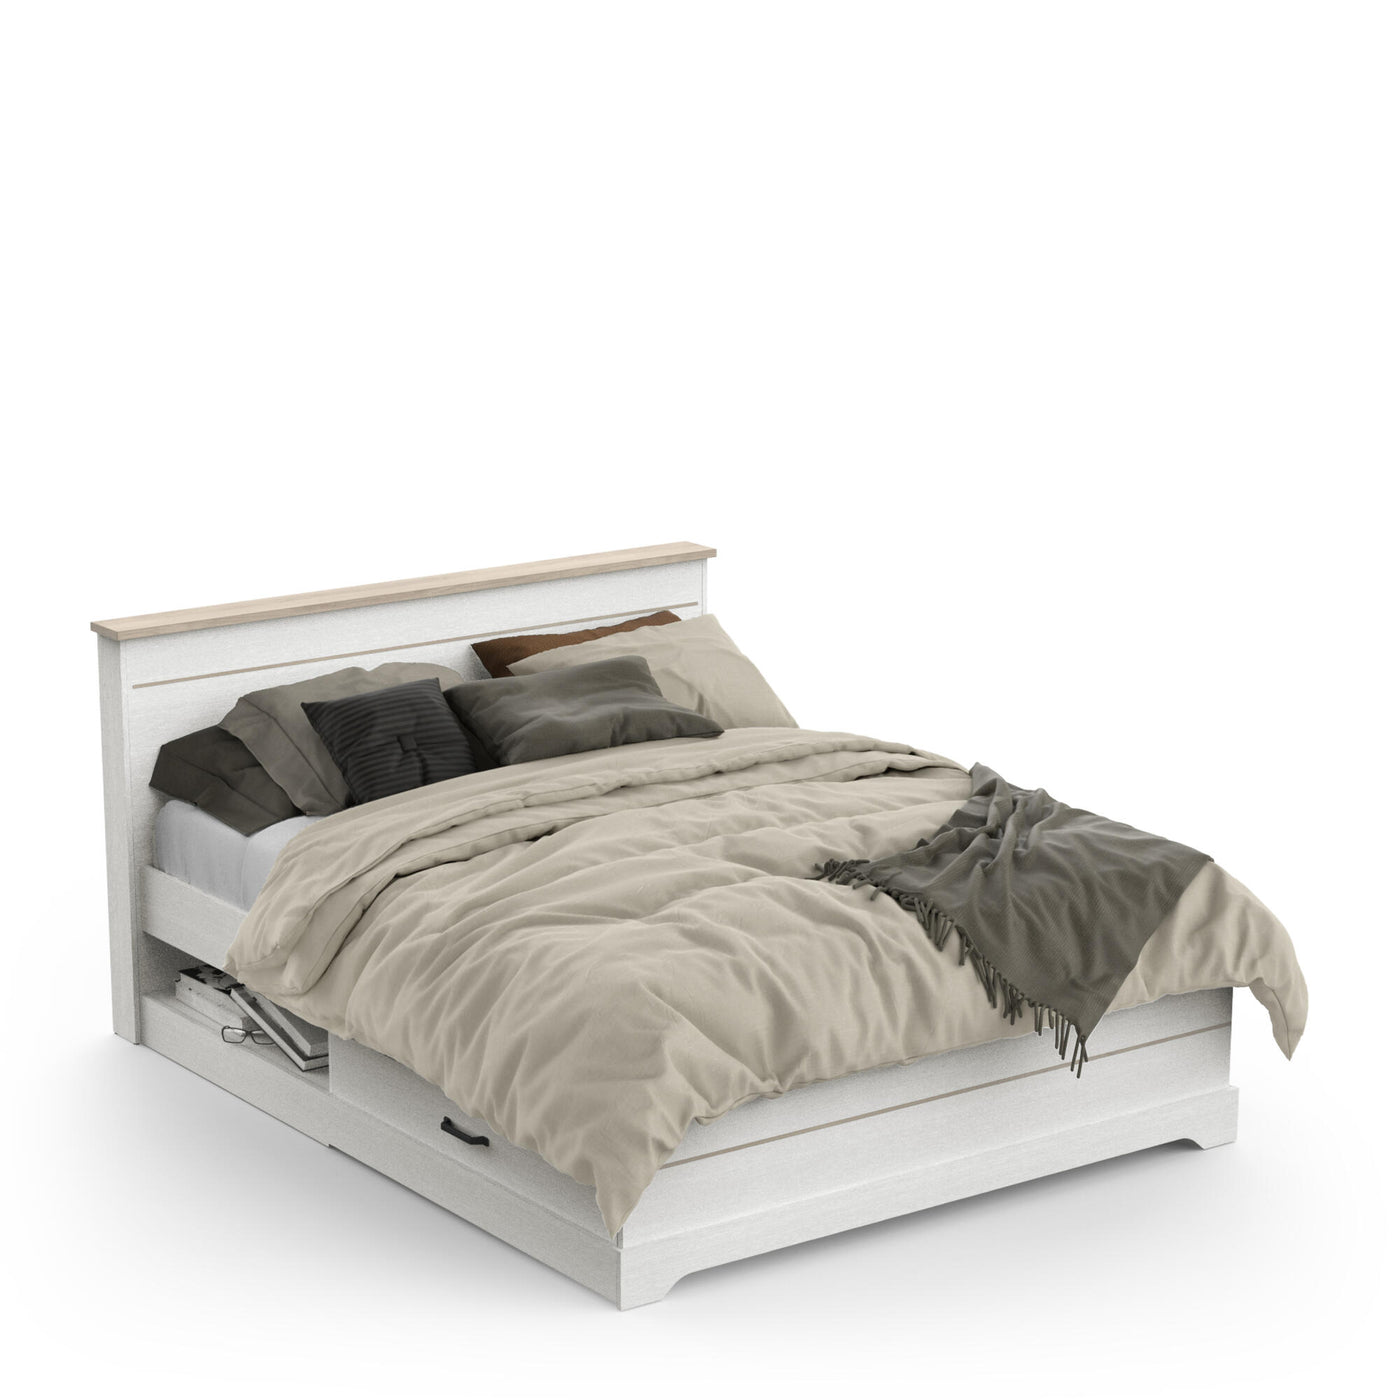 Modern wit houten bed met opberglades en beige dekbed, geplaatst in een stijlvolle slaapkamer.